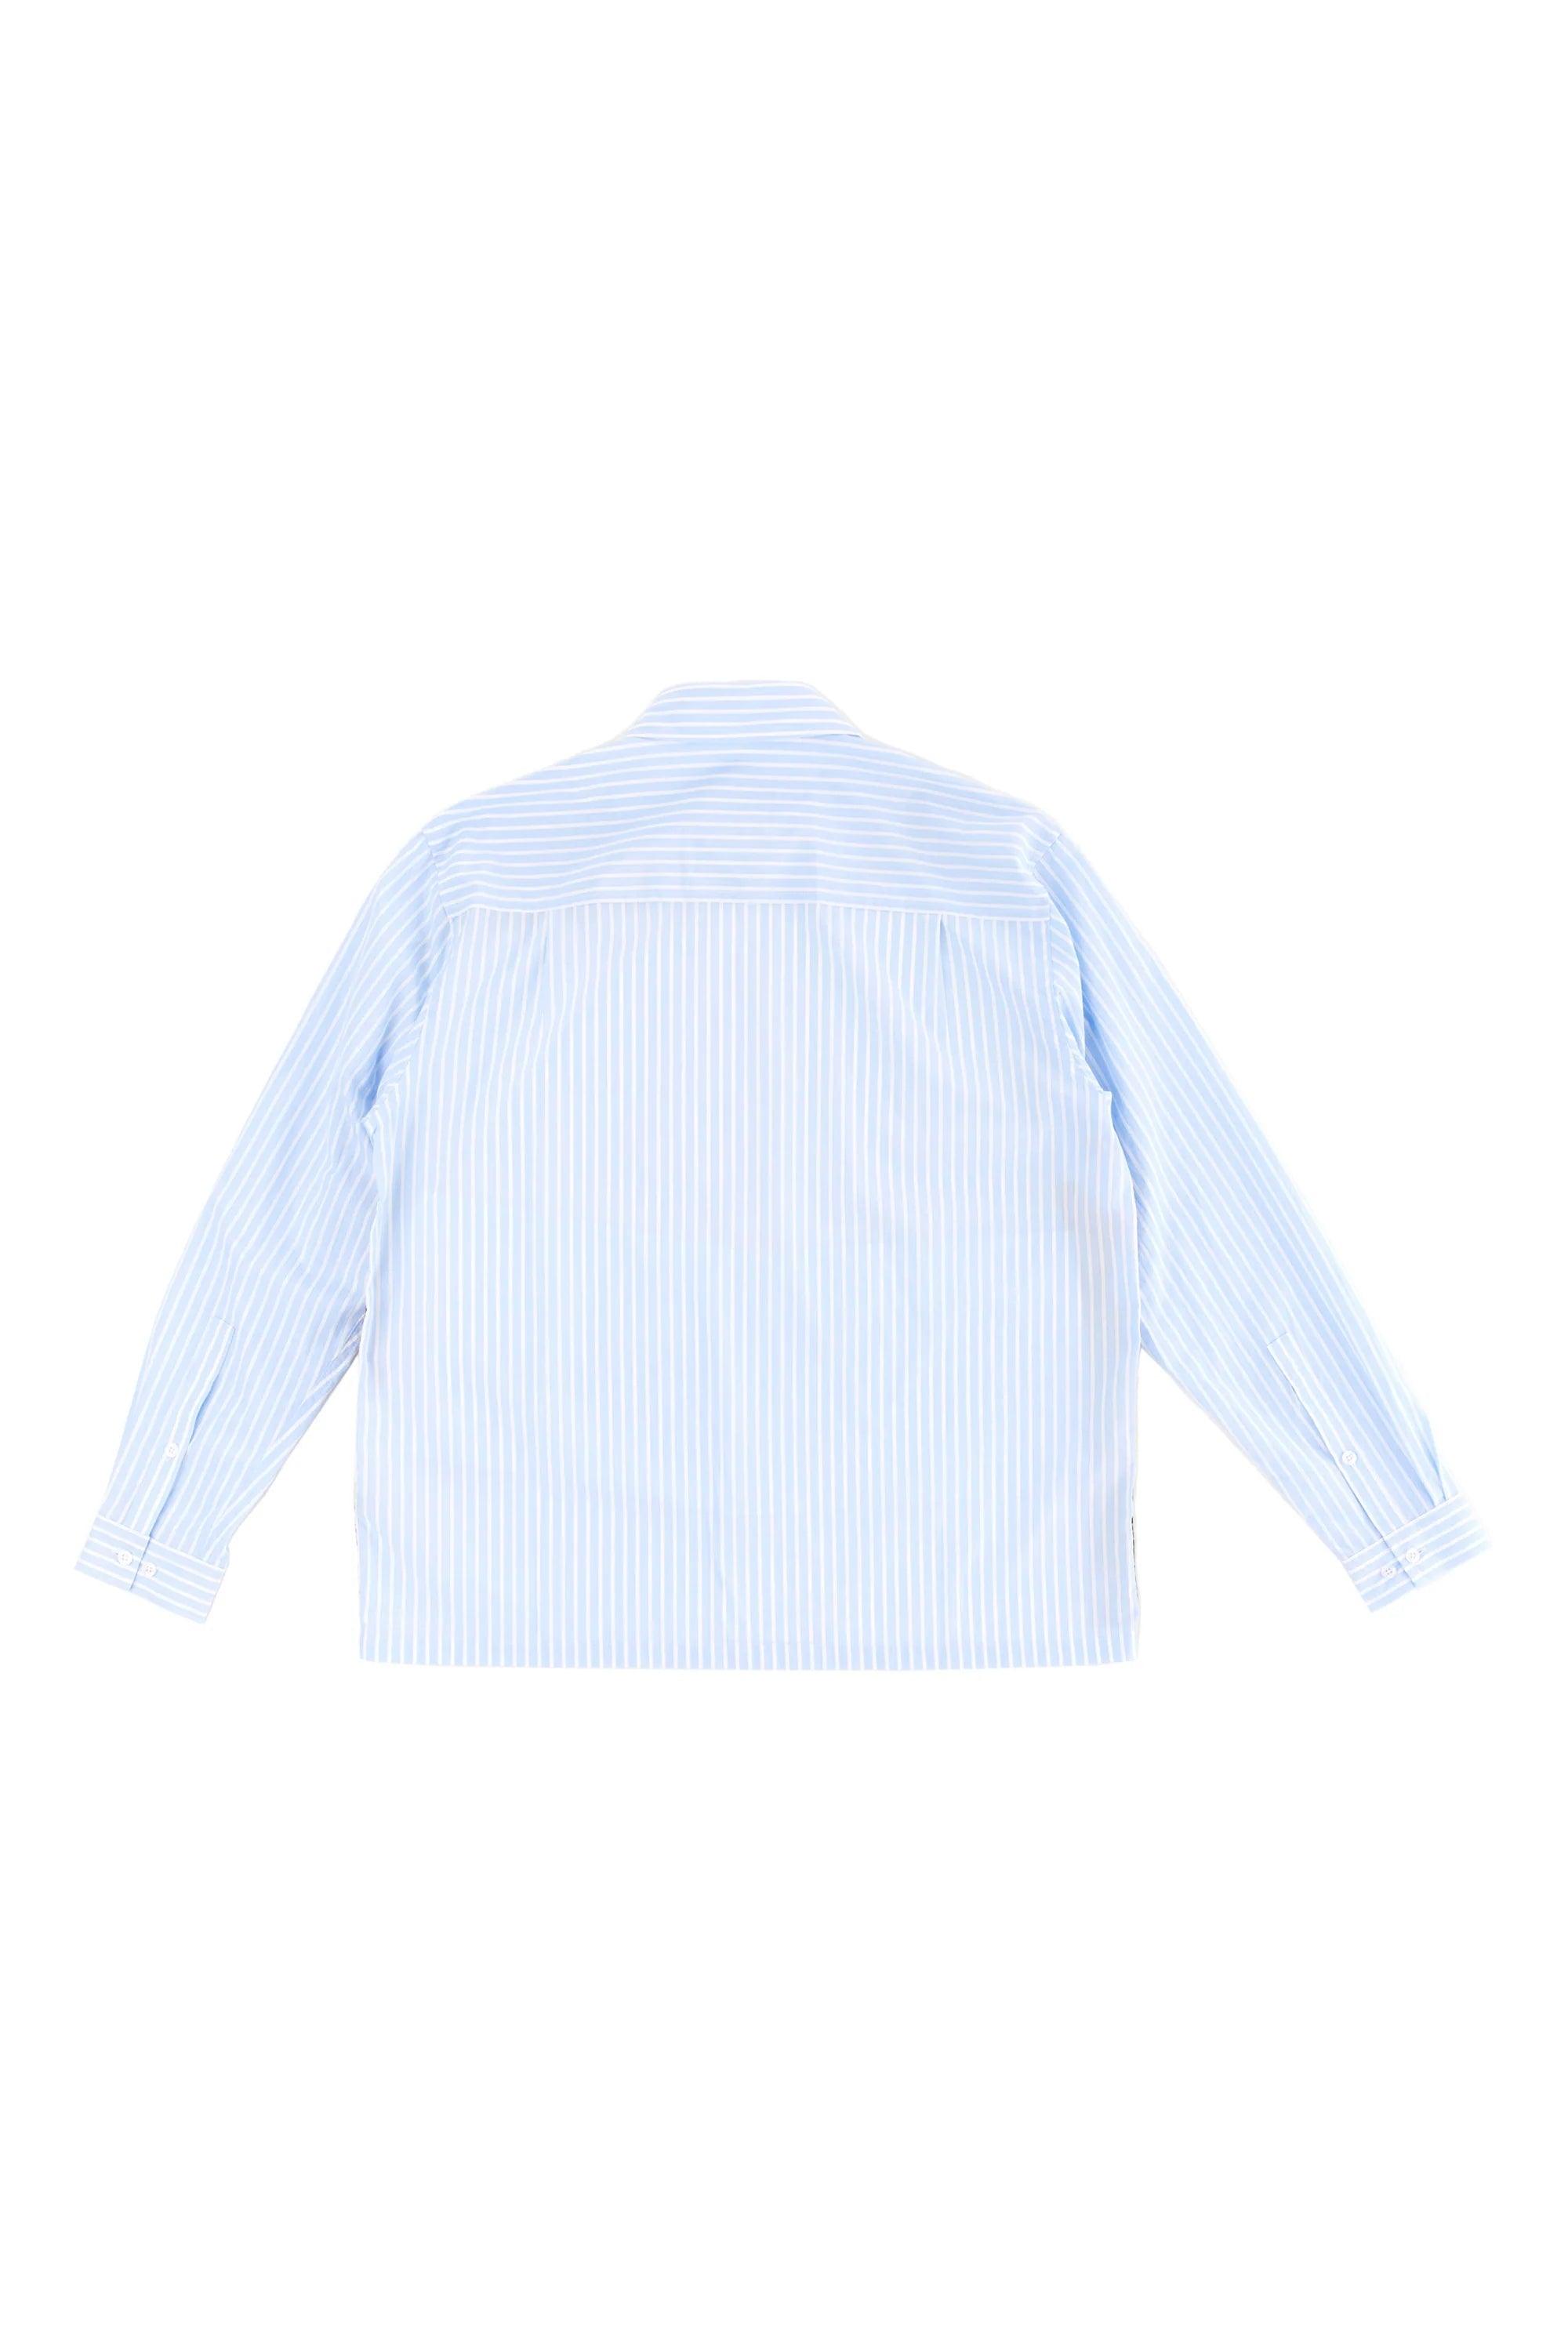 PAM / Perks and Mini - New Beginning Stripe LS Shirt -